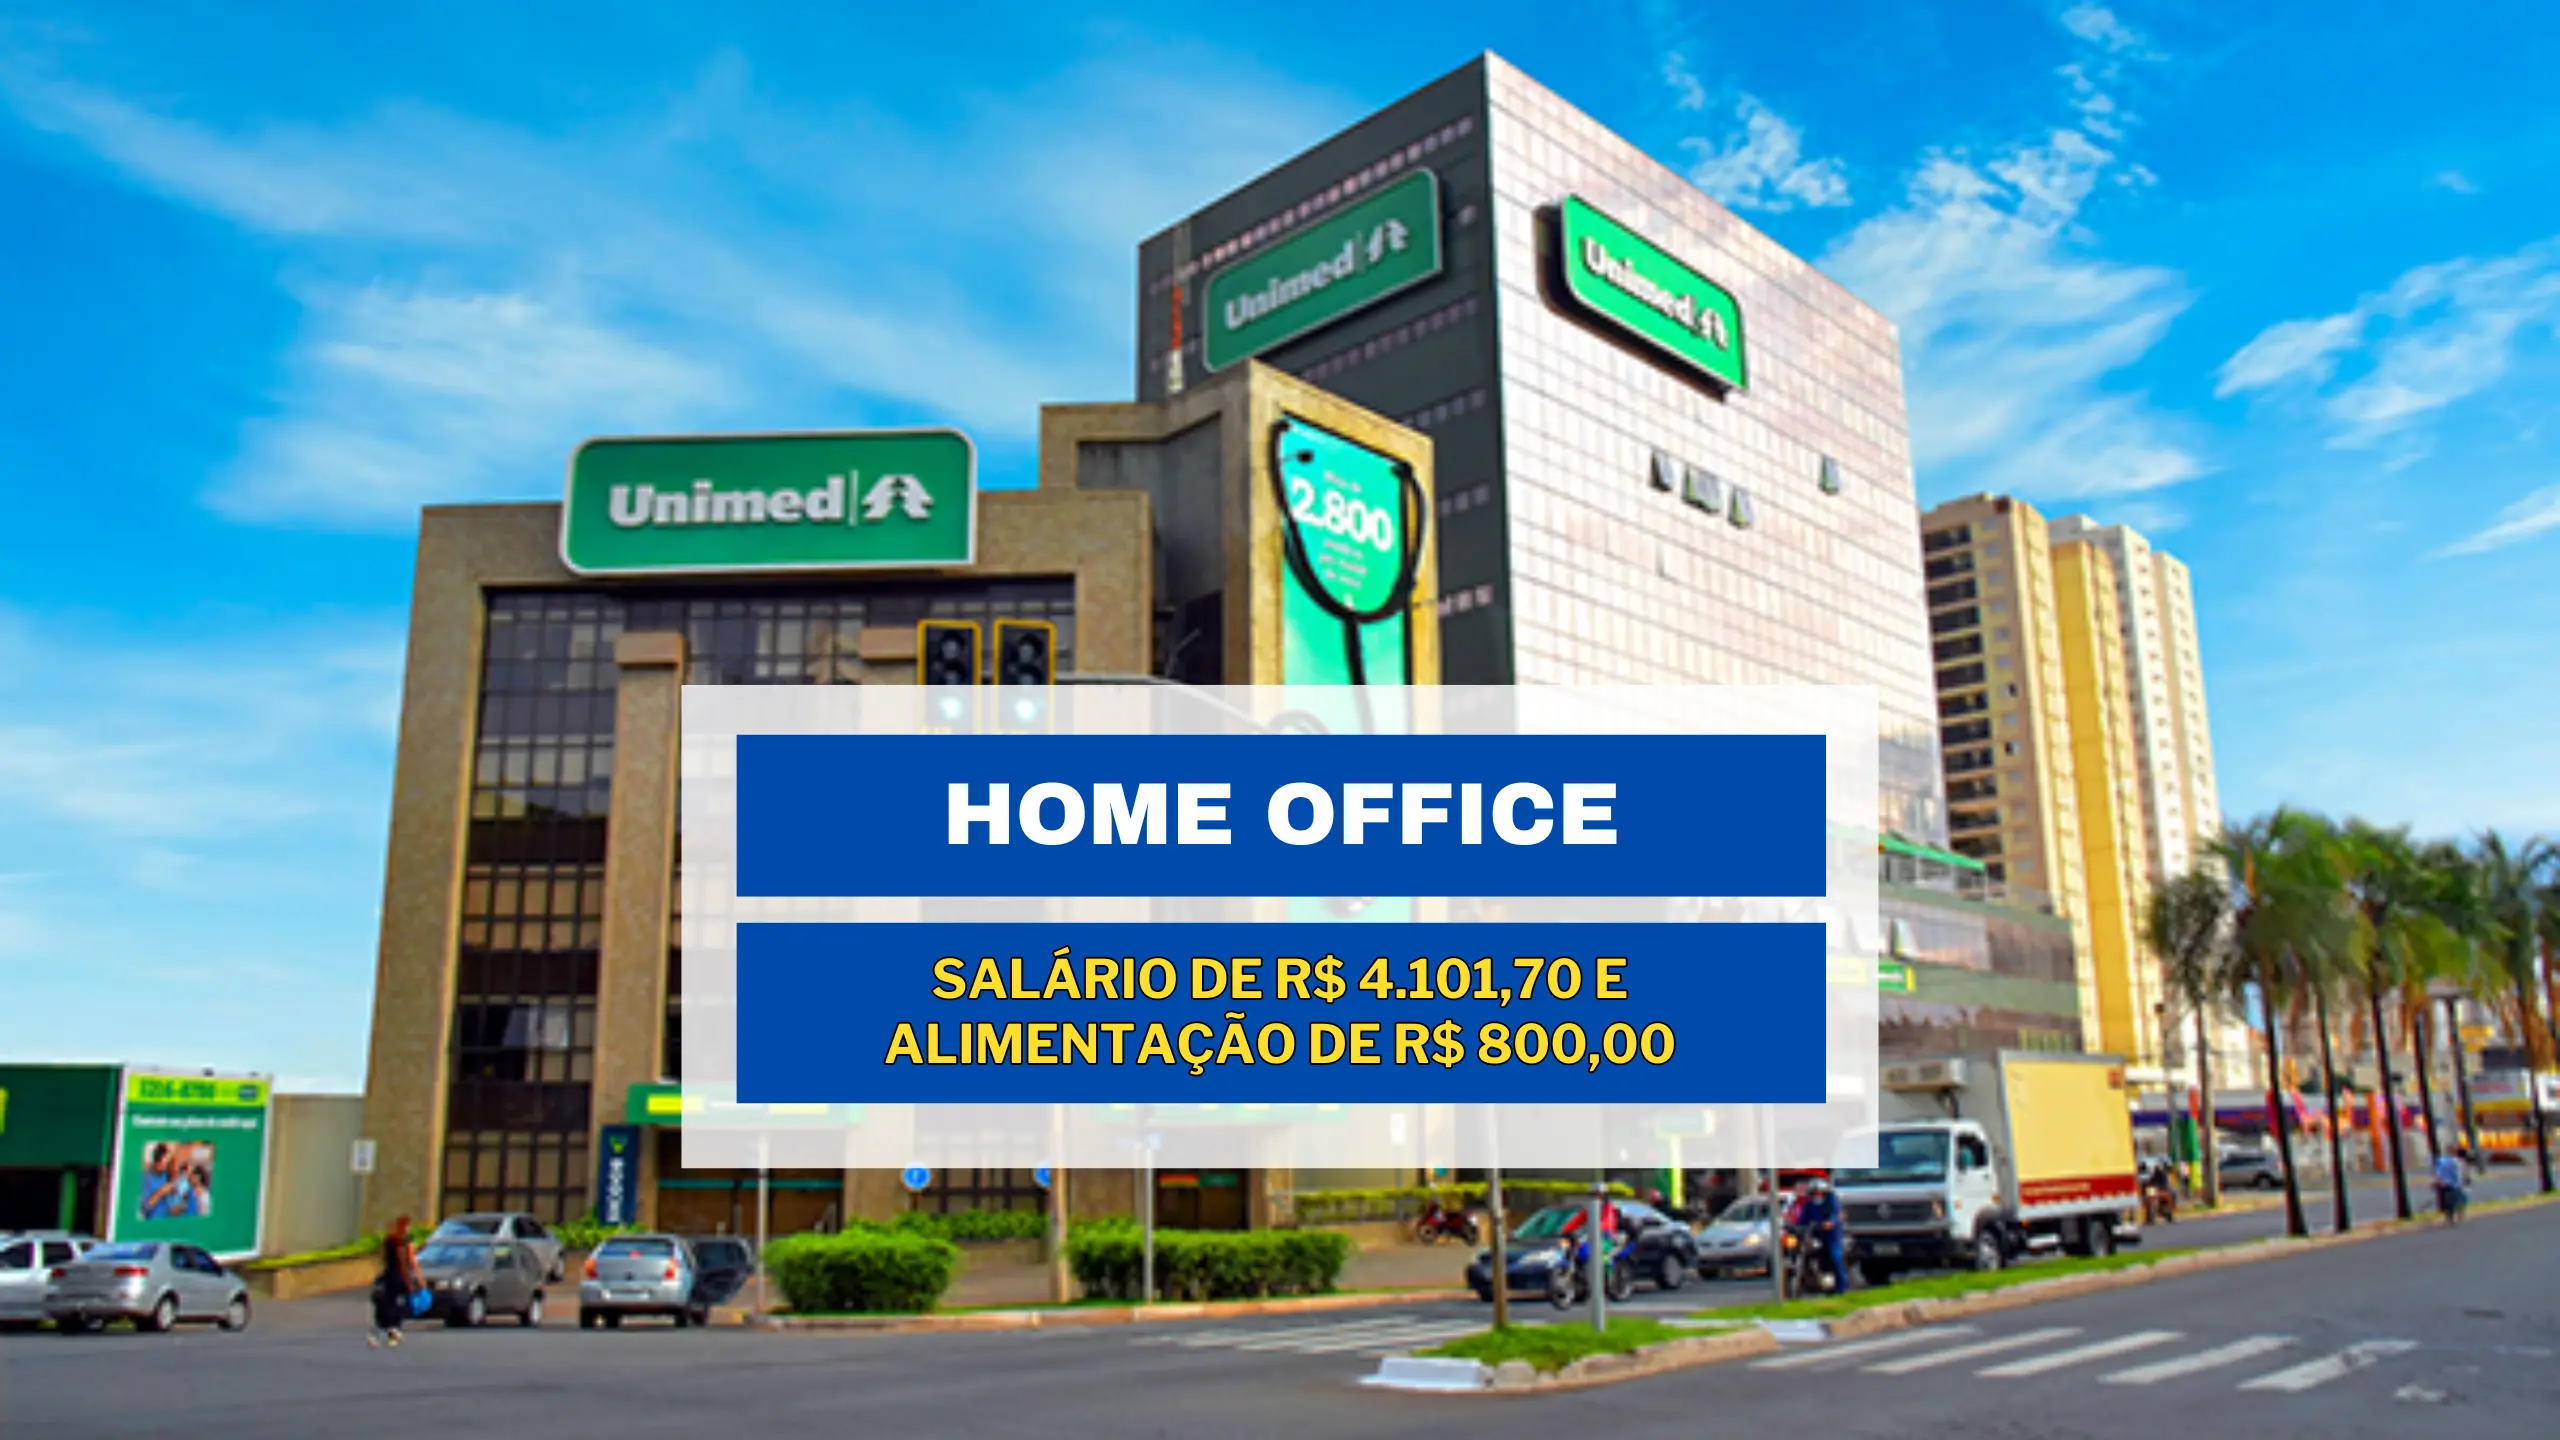 Unimed abriu vaga HOME OFFICE com salário de R$ 4.101,70 e Alimentação de R$ 800,00 no setor de Comunicação e Marketing